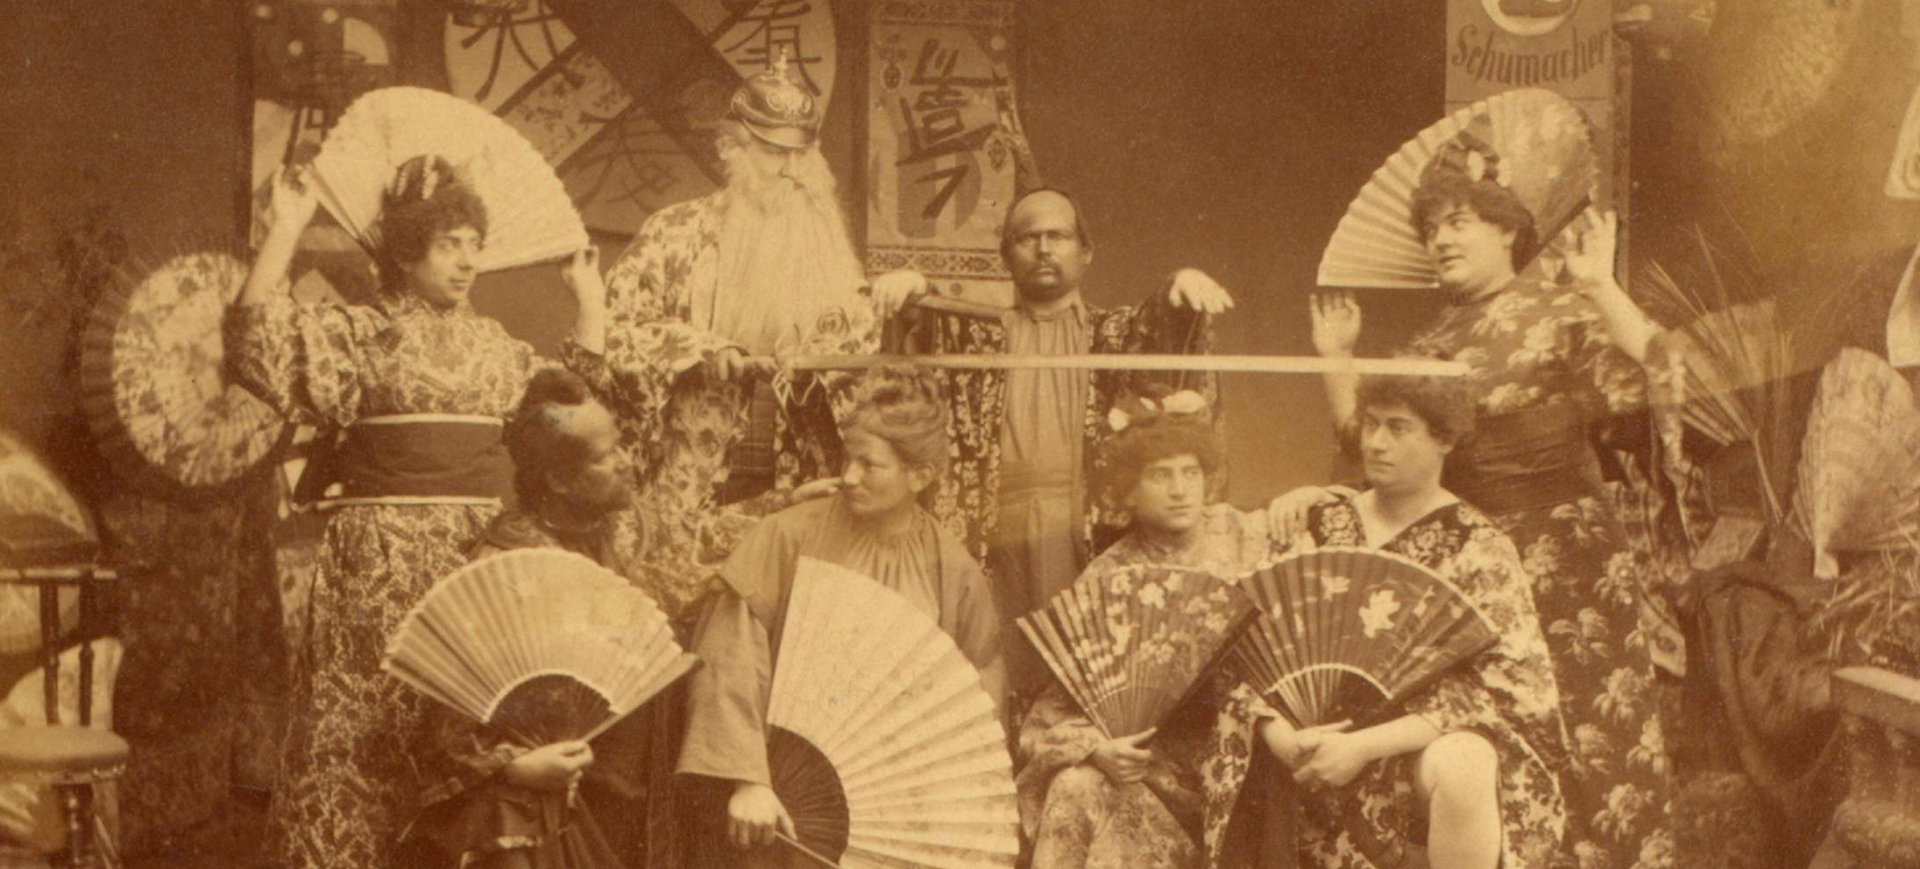 Der kölsche Mikado oder eine Nacht in Filipo - Divertissementchen 1888 - Ensemble in fernöstlichen Kostümen